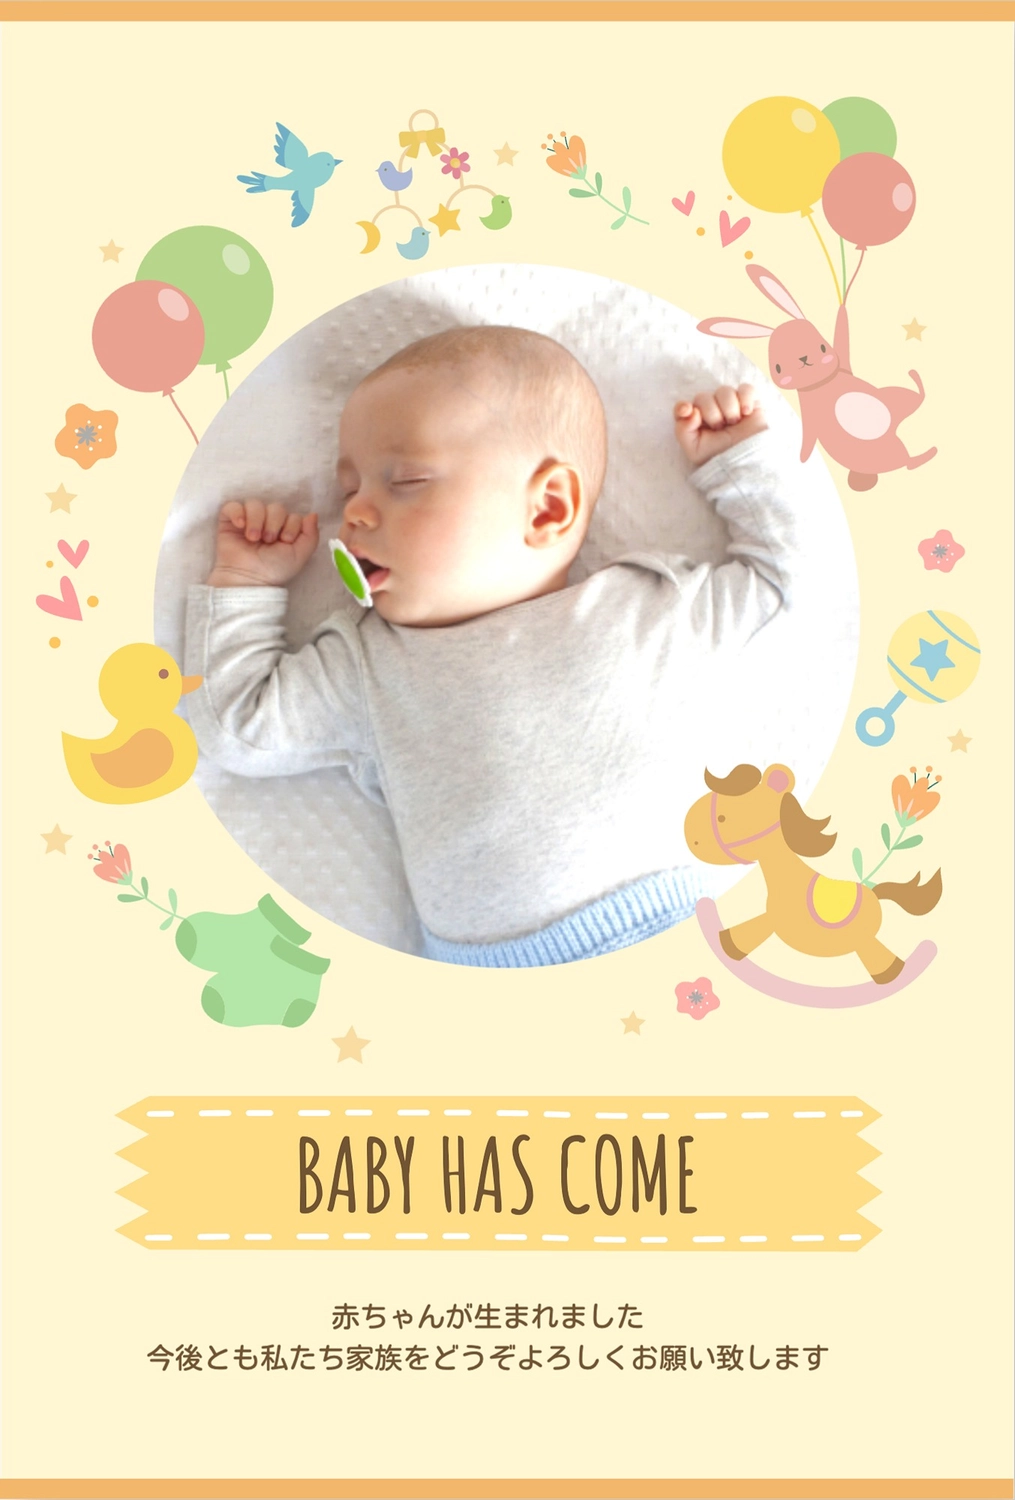 赤ちゃんの写真入り出産報告, 출산보고, 엽서, 파스텔 컬러, 메시지 카드 템플릿